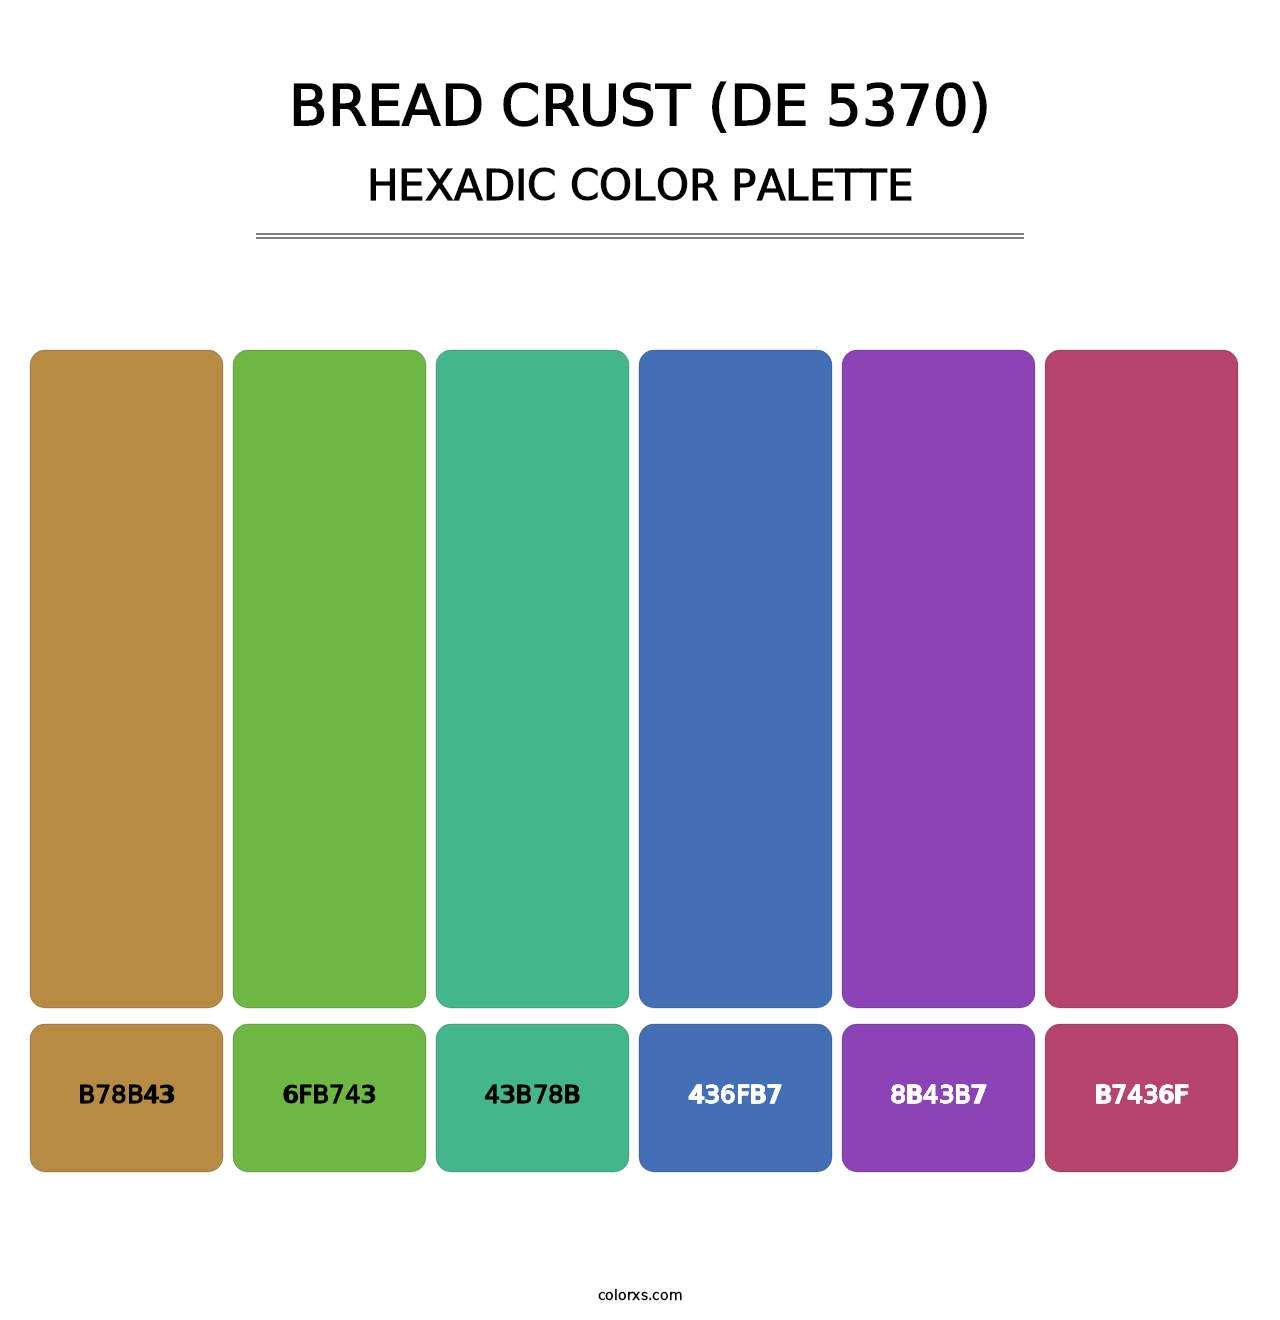 Bread Crust (DE 5370) - Hexadic Color Palette